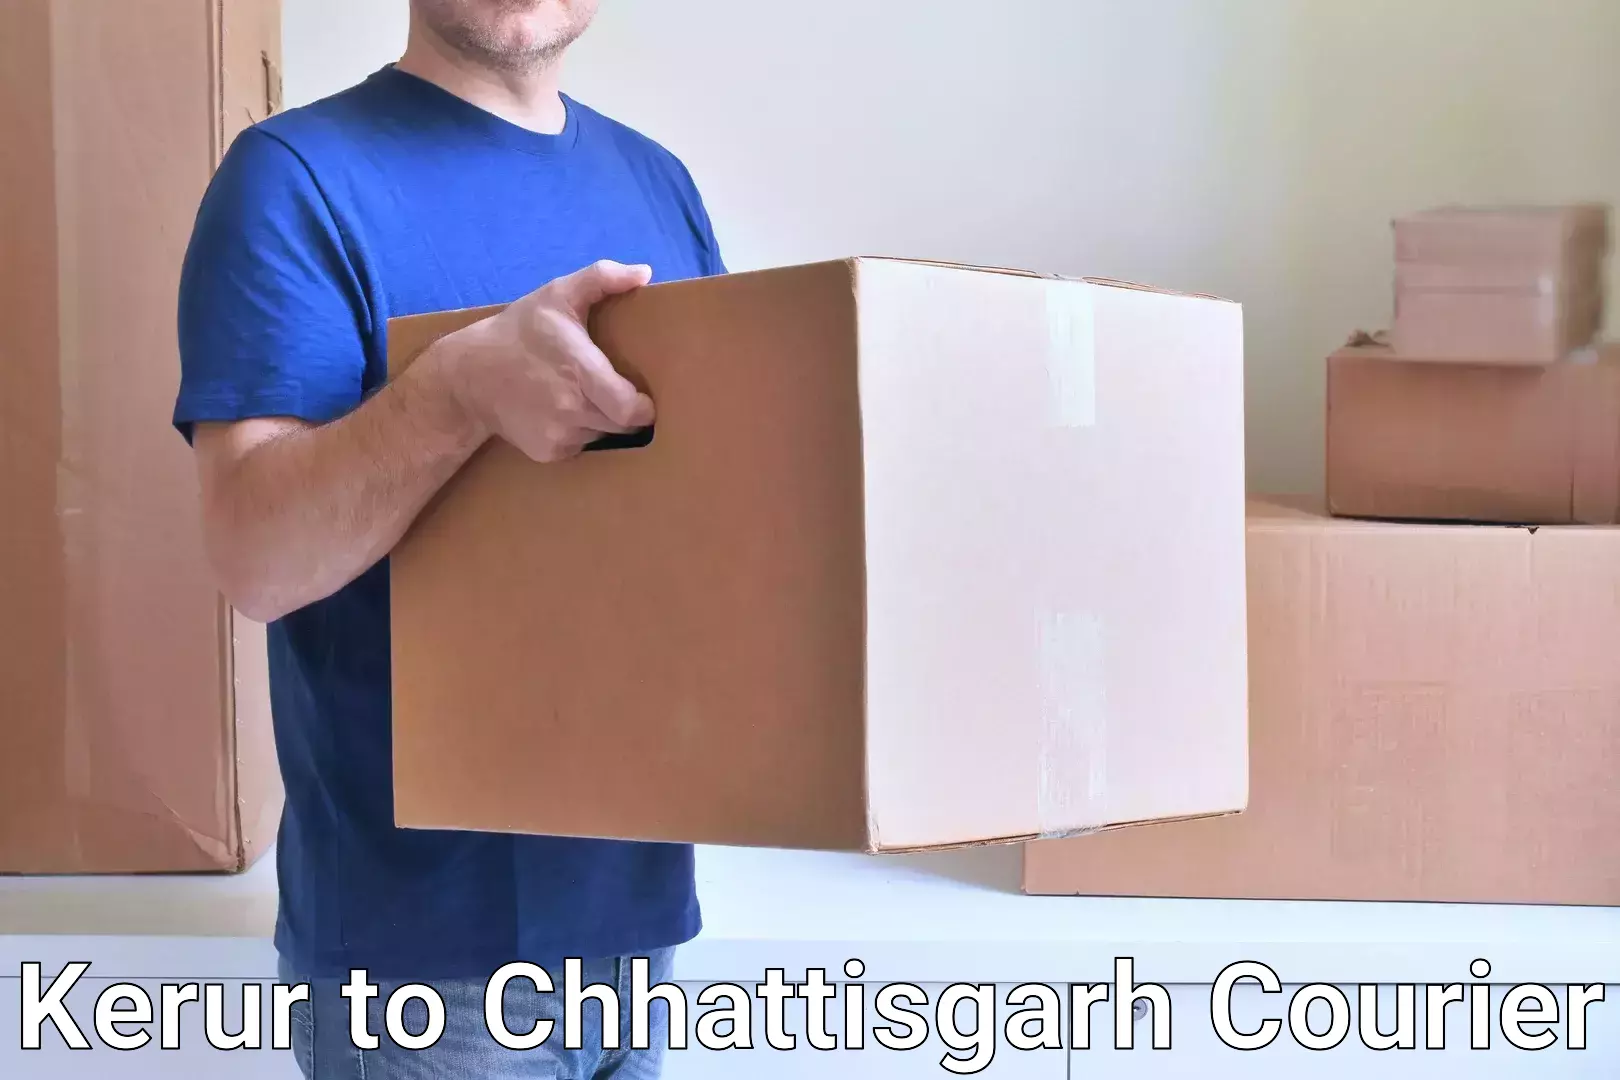 Next-generation courier services Kerur to Chhattisgarh